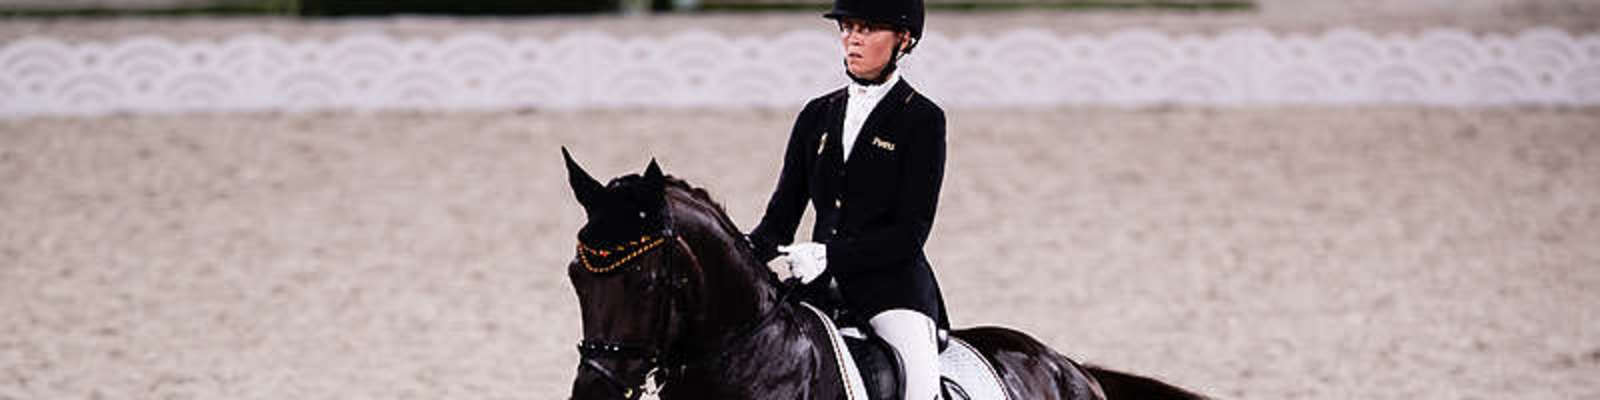 Regine Mispelkamp auf ihrem Pferd bei den Paralympics in Tokio